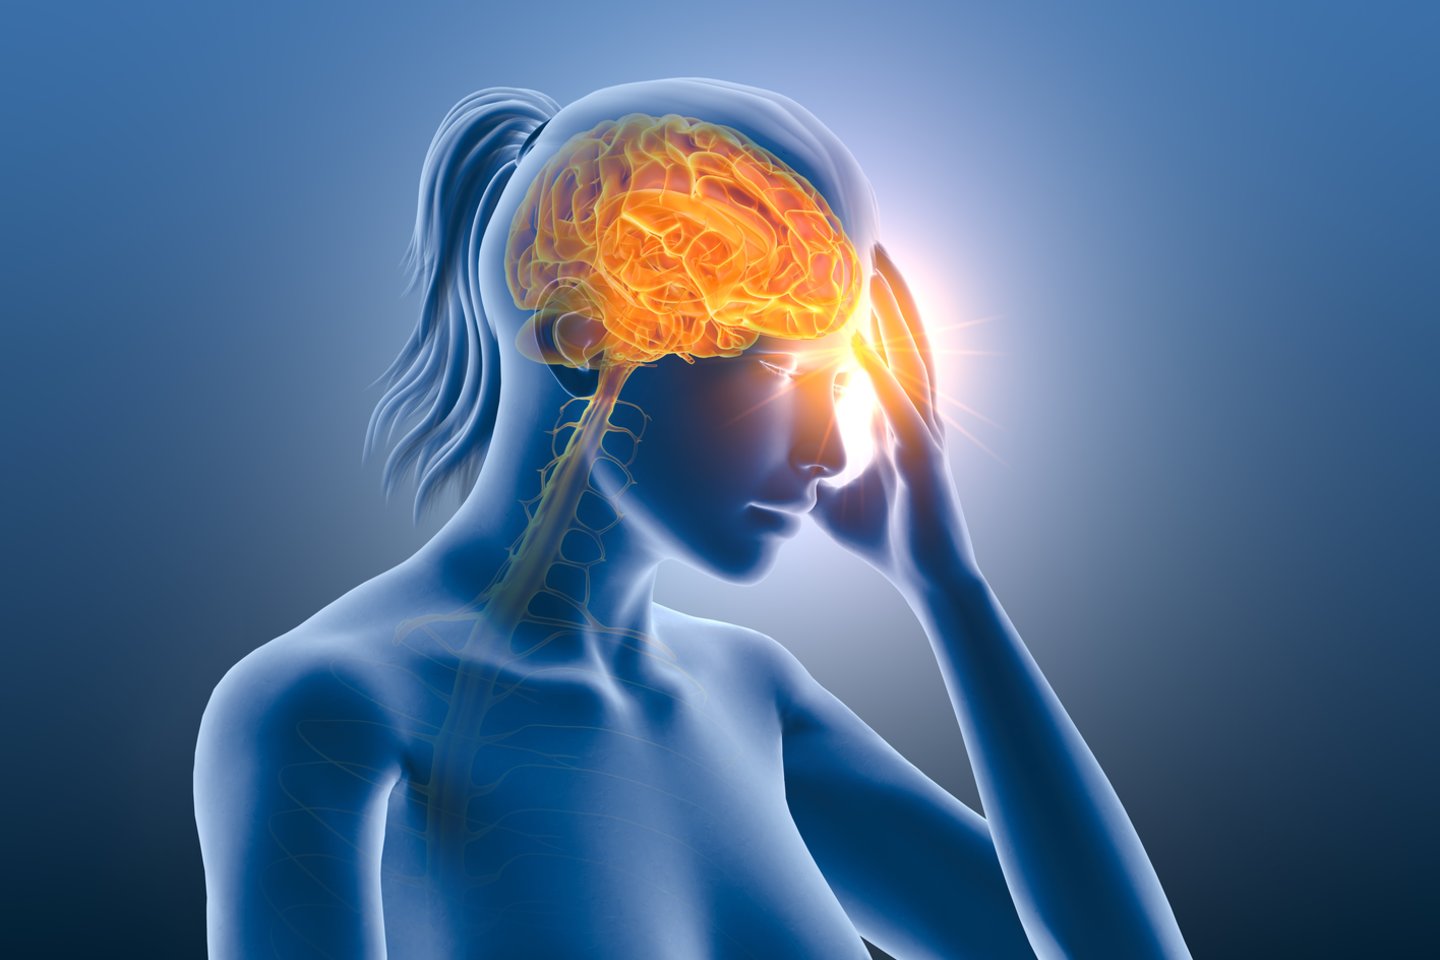 Labai daug klaidinančios informacijos apie migreną galima rasti socialiniuose tinkluose.<br>123rf nuotr.